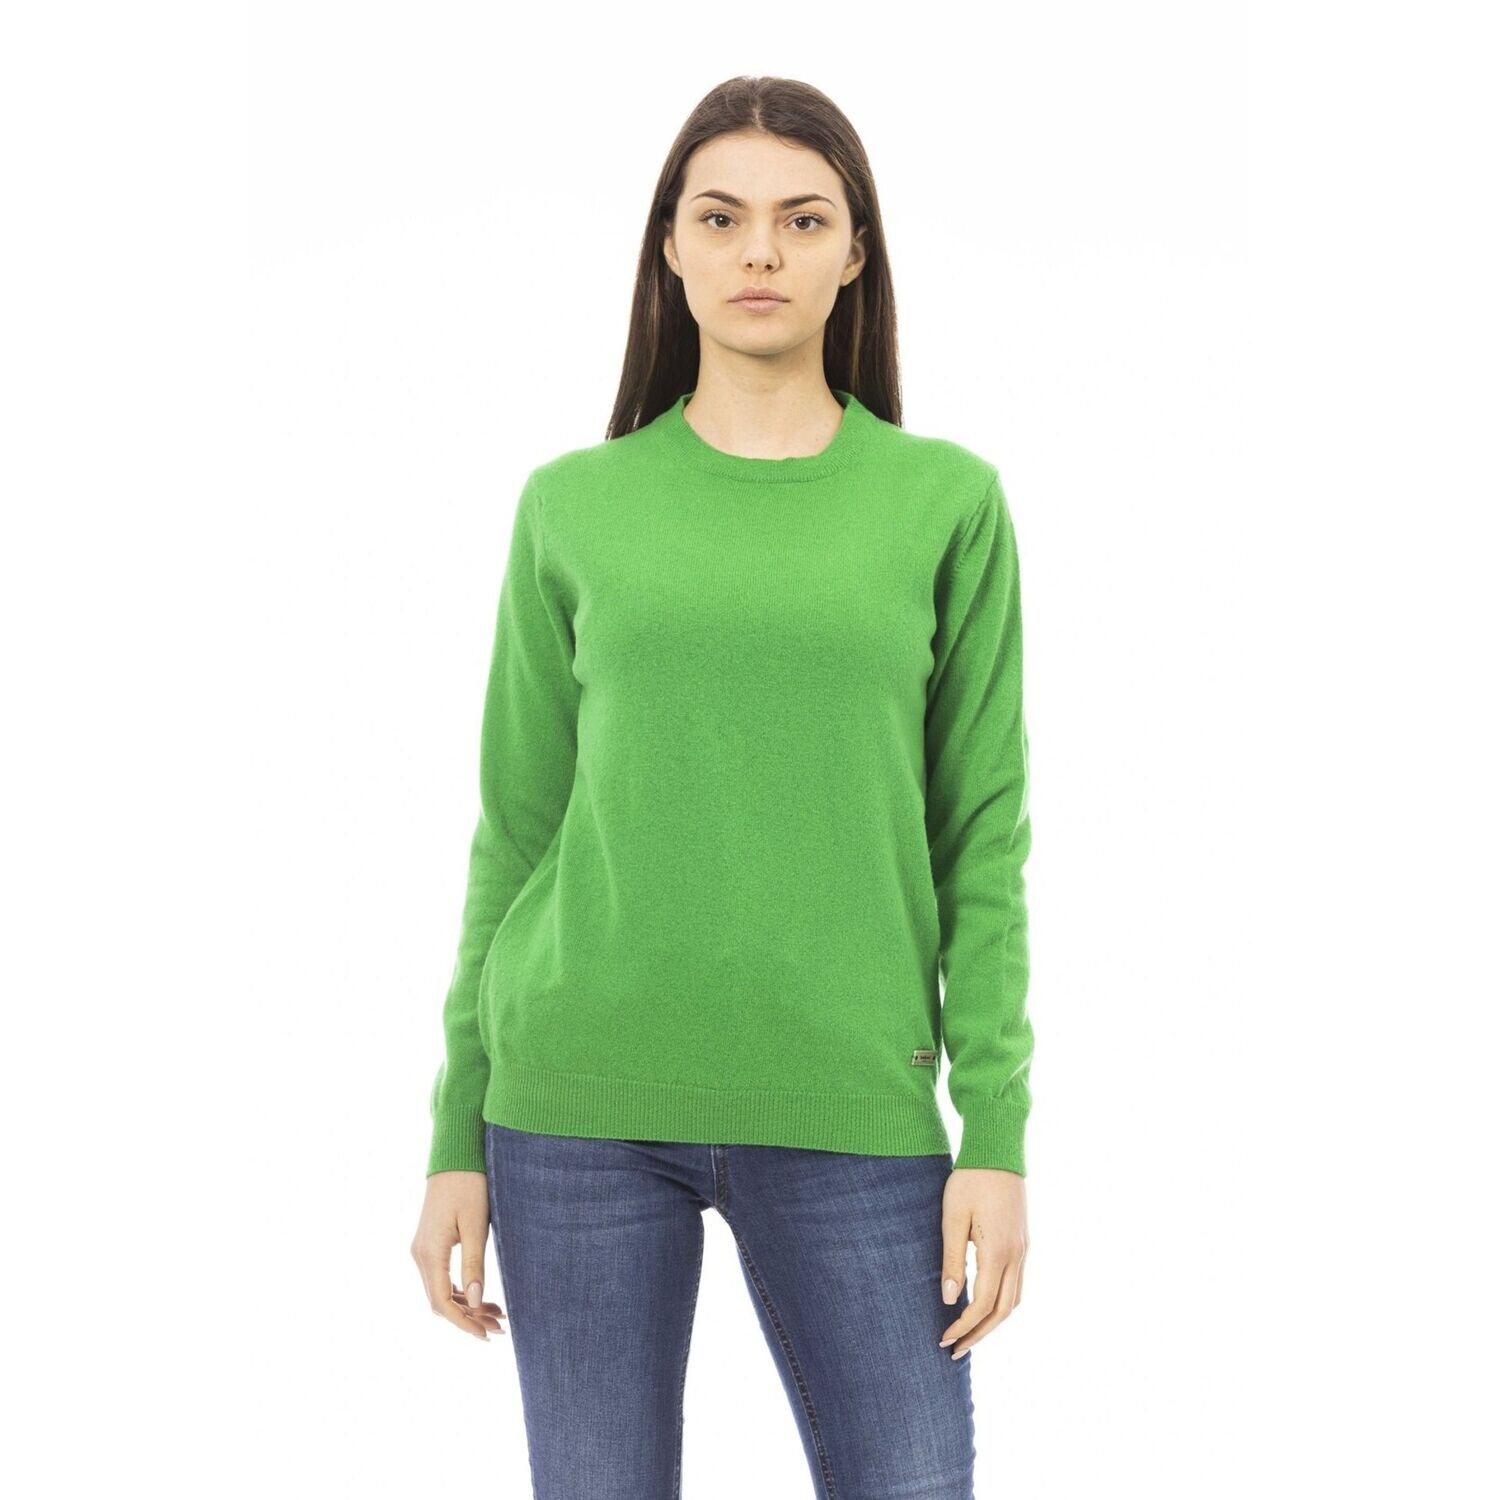 Baldinini Trend Vibrant Green Sweater